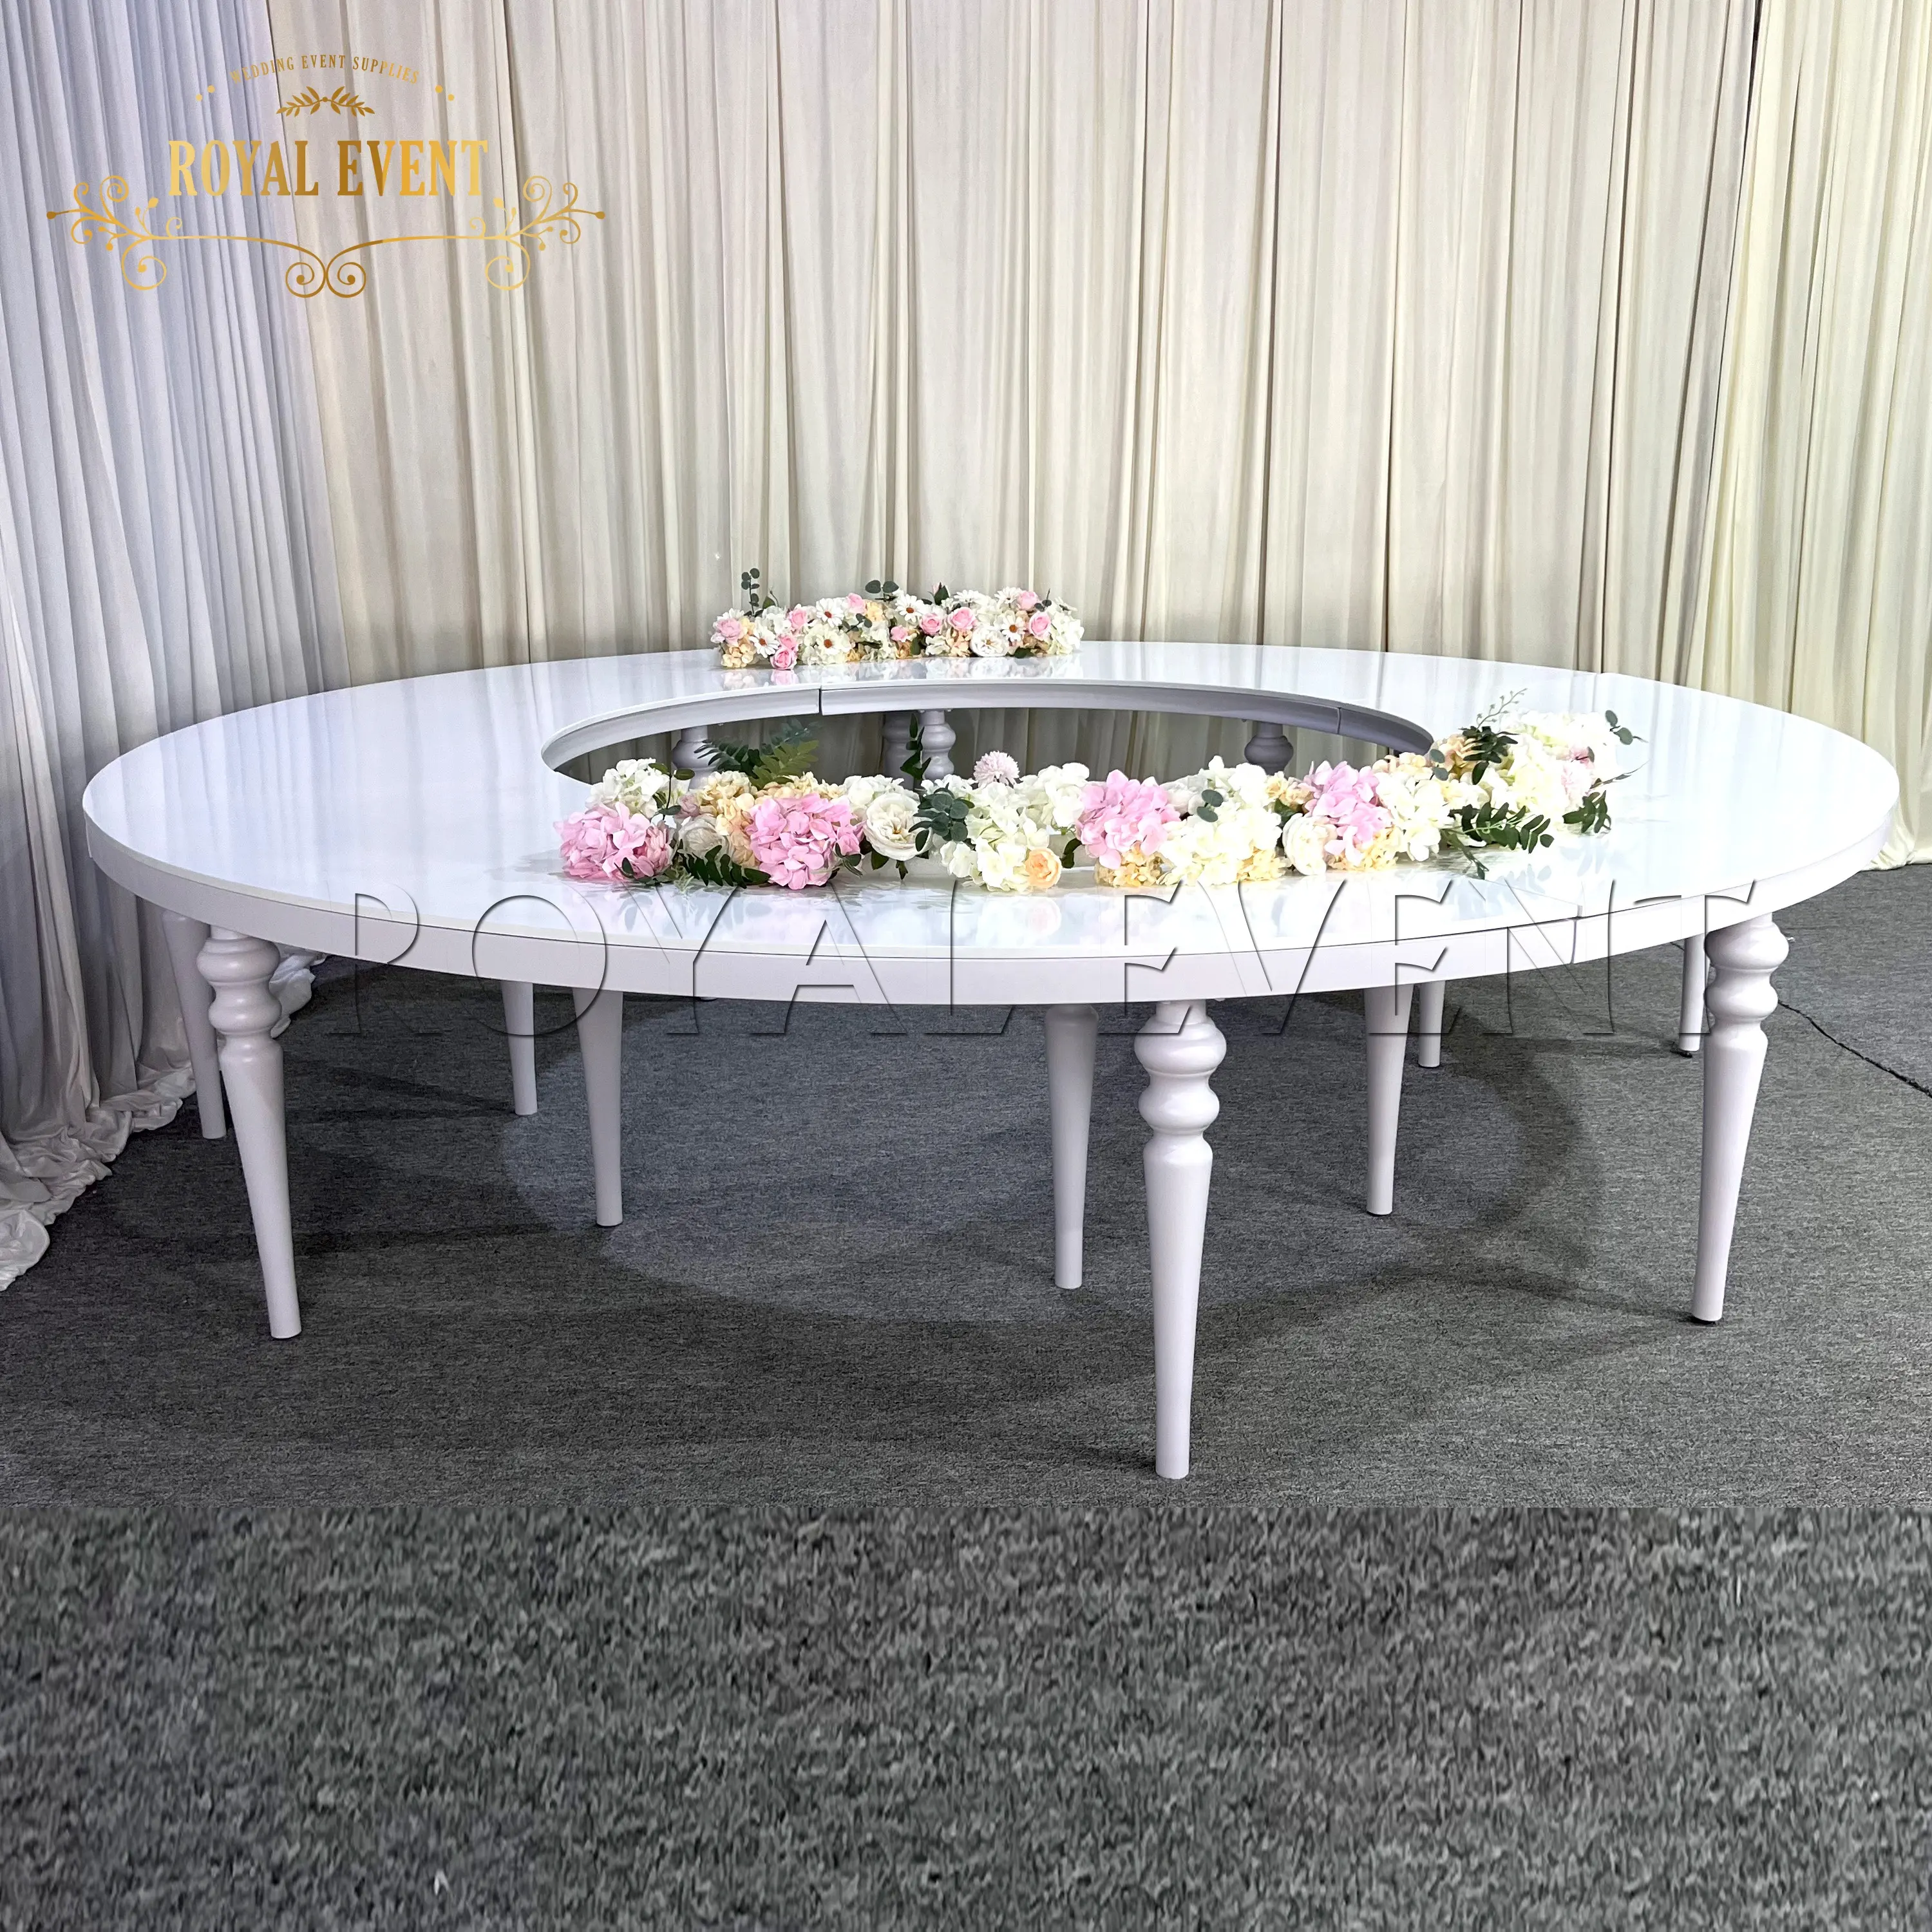 Exquisita mesa de media luna serpentina MDF blanca, mesa de acero inoxidable, mesa de fiesta de boda para eventos